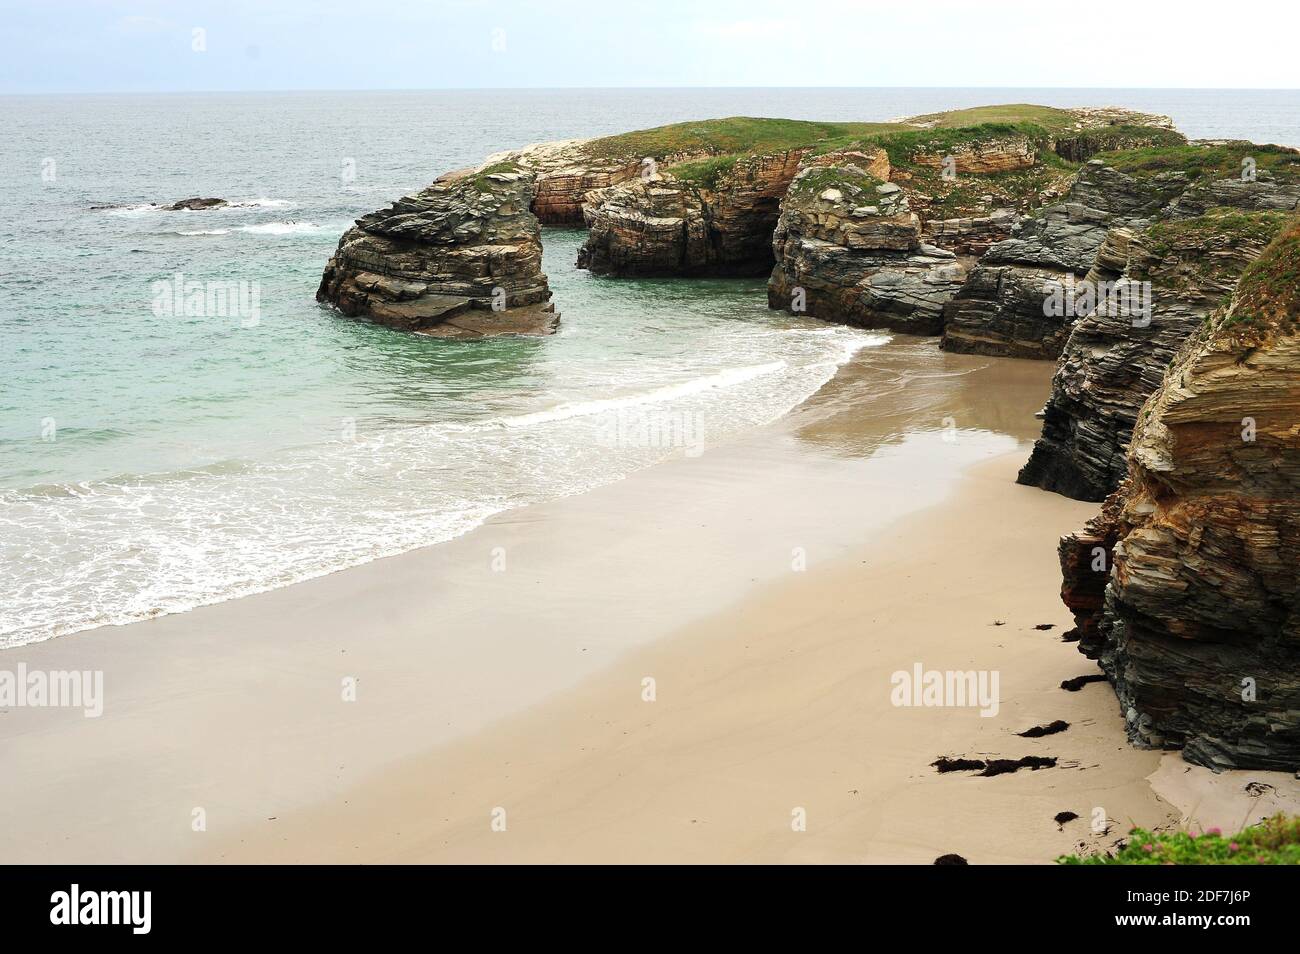 Praia das Illas (Islands beach). Ribadeo, Lugo province, Galicia, Spain. Stock Photo